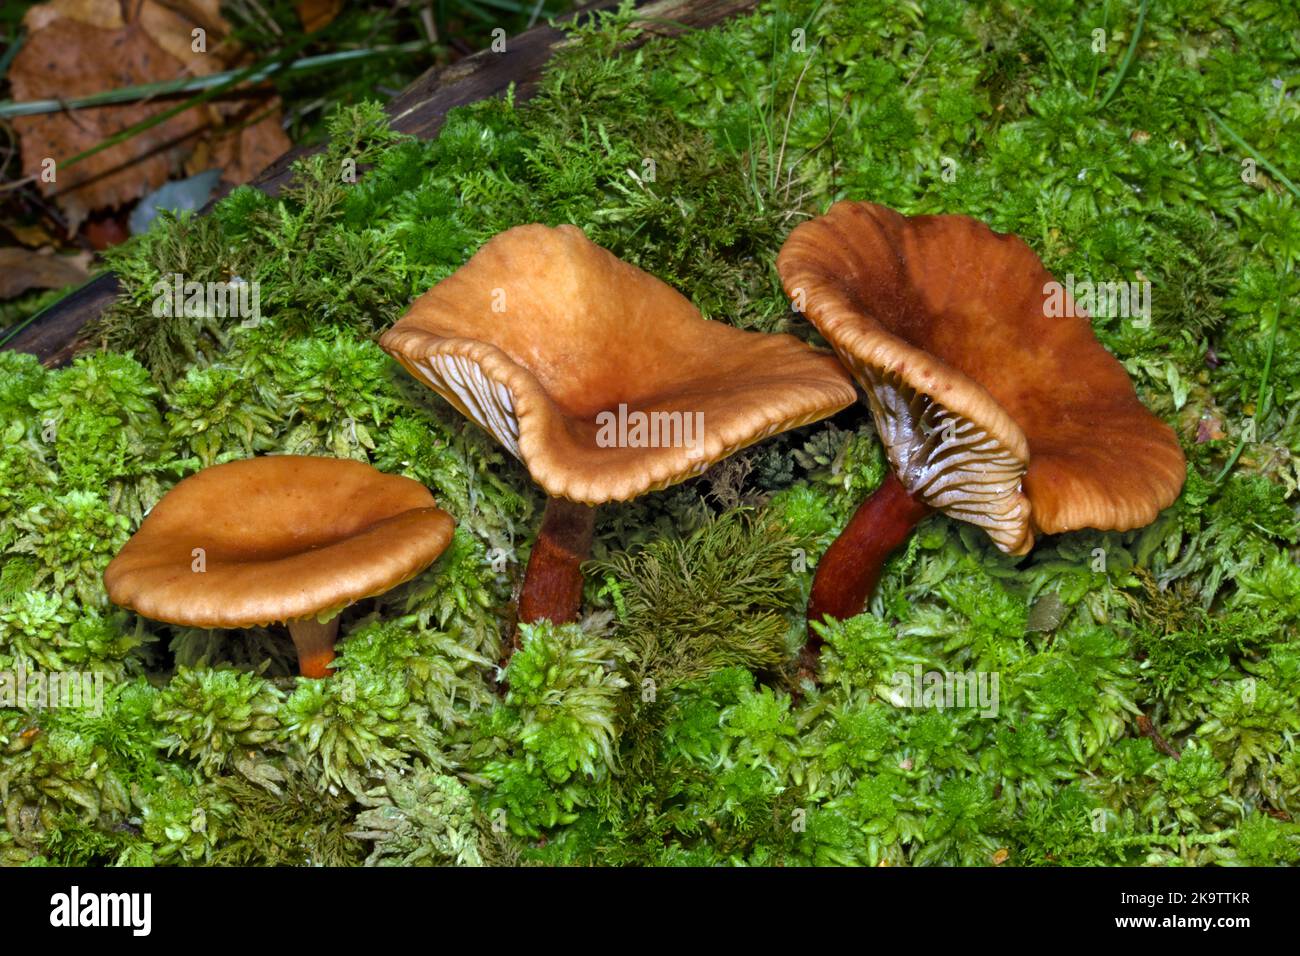 Lactarius oscururatus (calciotto di ontano) si trova sotto alberi di ontano in condizioni umide e di solito associato con muschio. Foto Stock